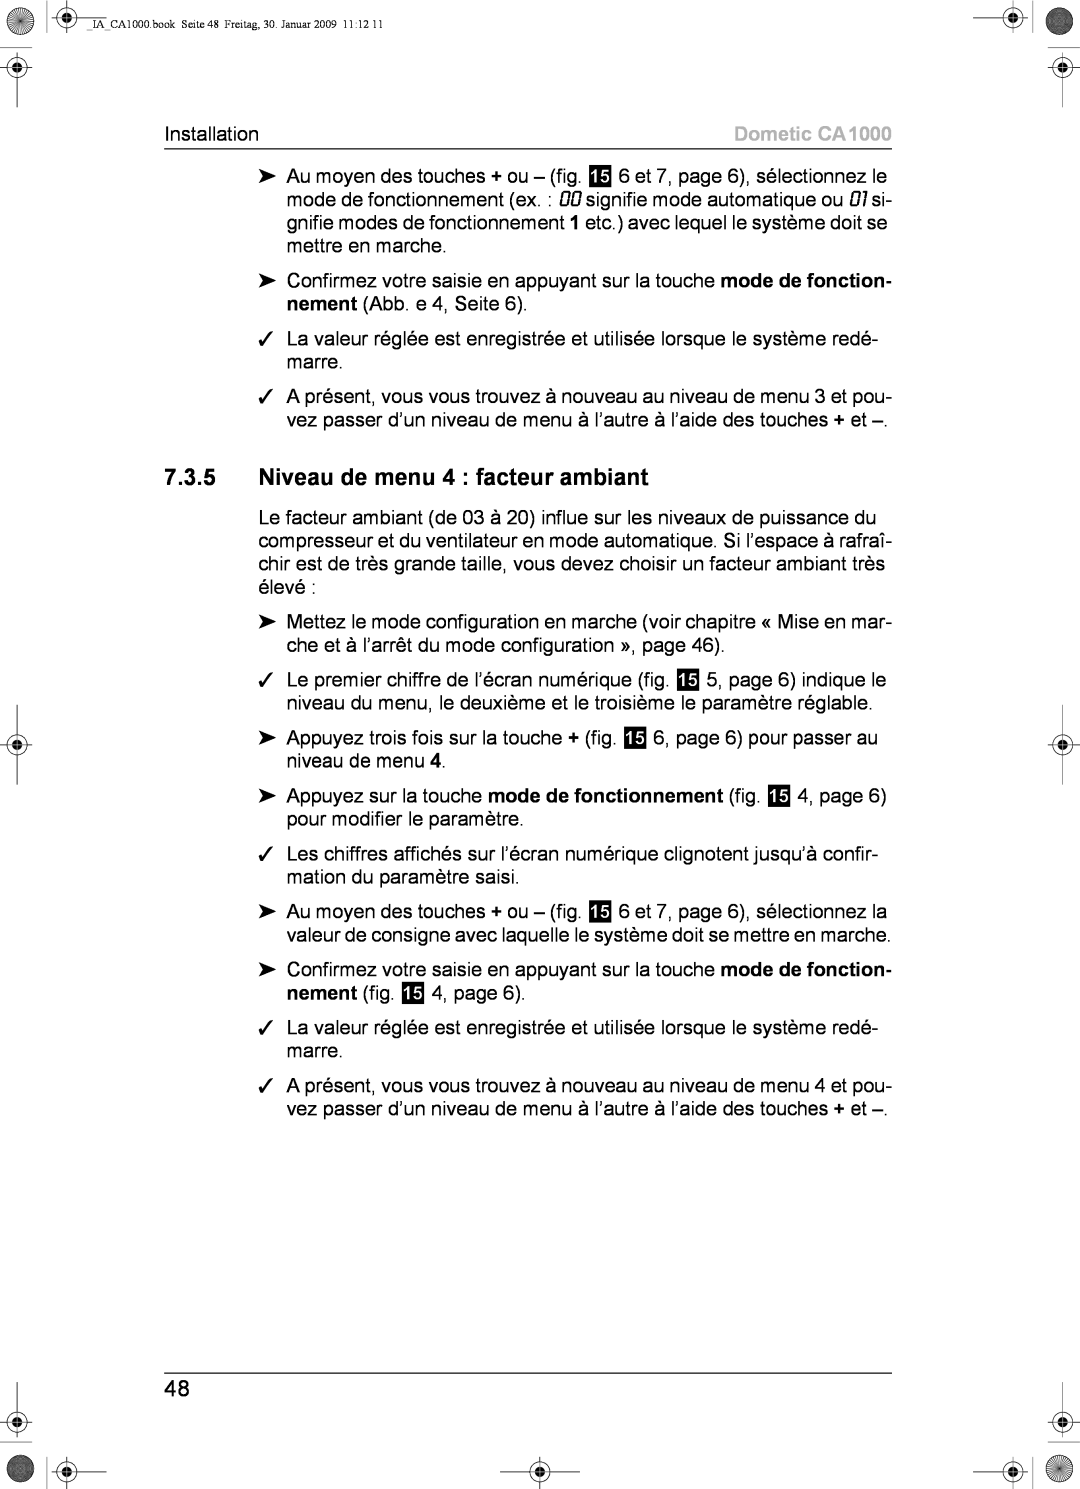 Dometic installation manual 7.3.5Niveau de menu 4 : facteur ambiant, Dometic CA1000 